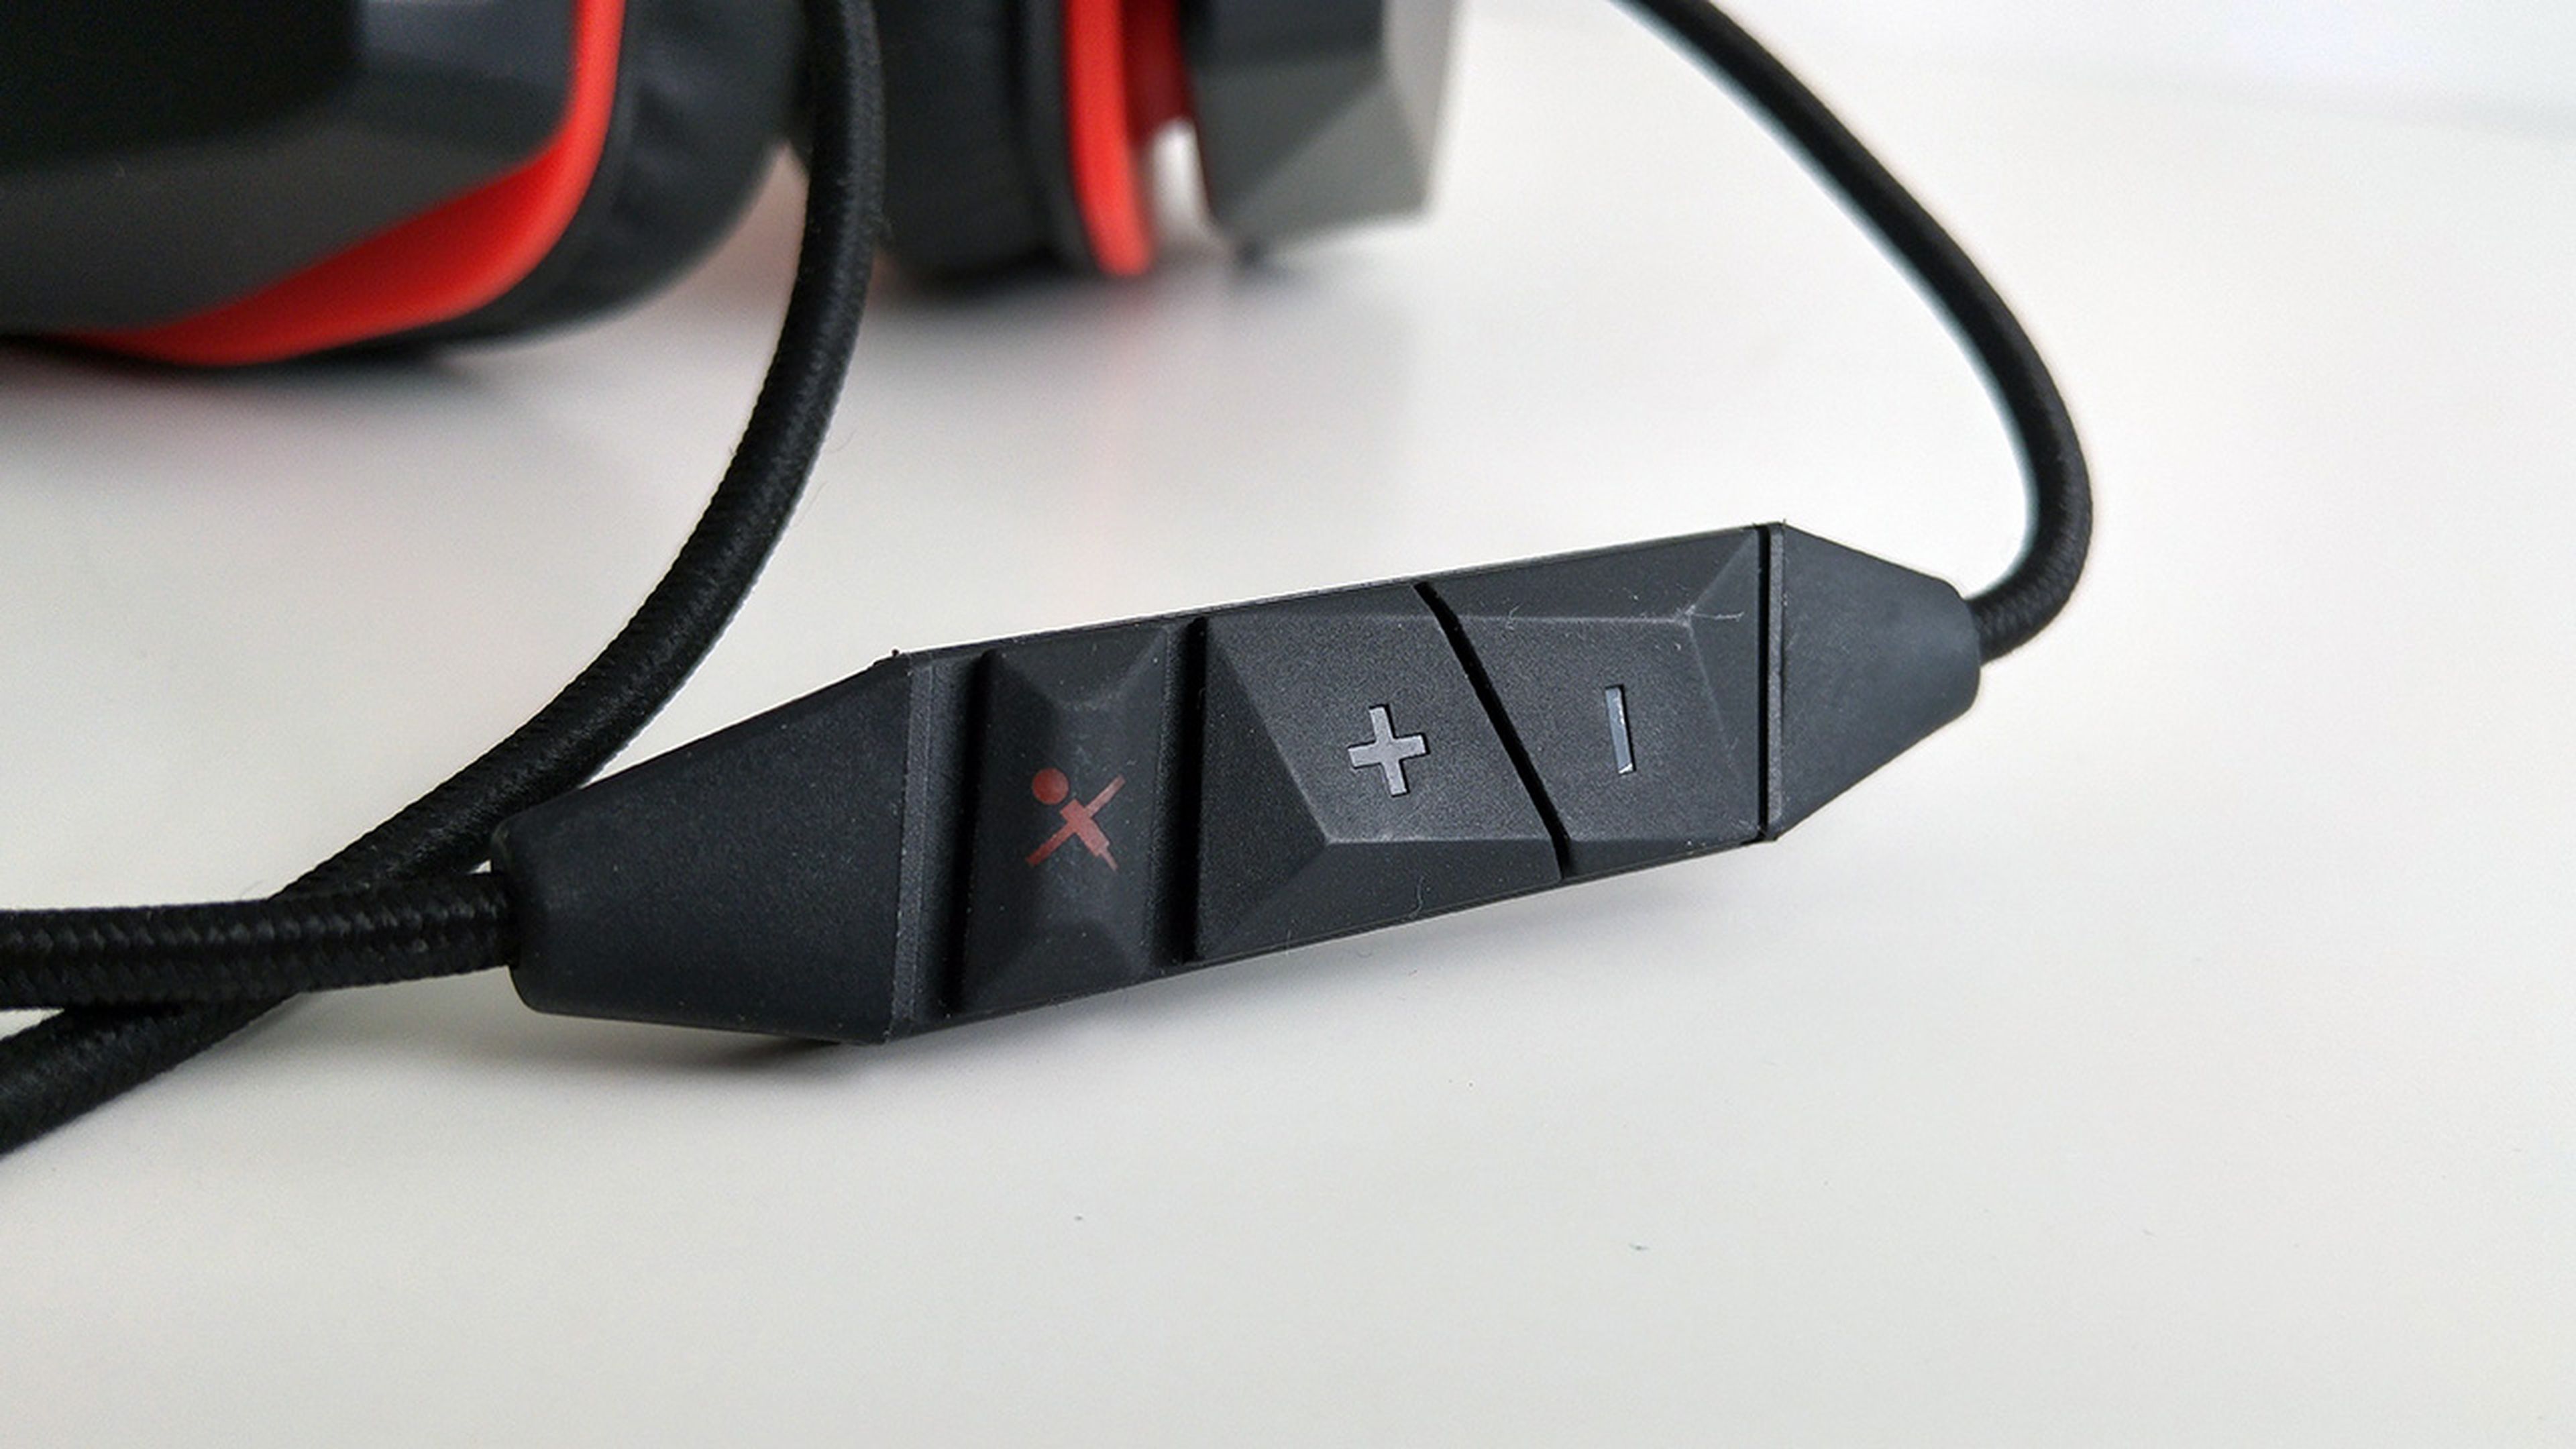 botones del Lenovo Y gaming surround sound headset